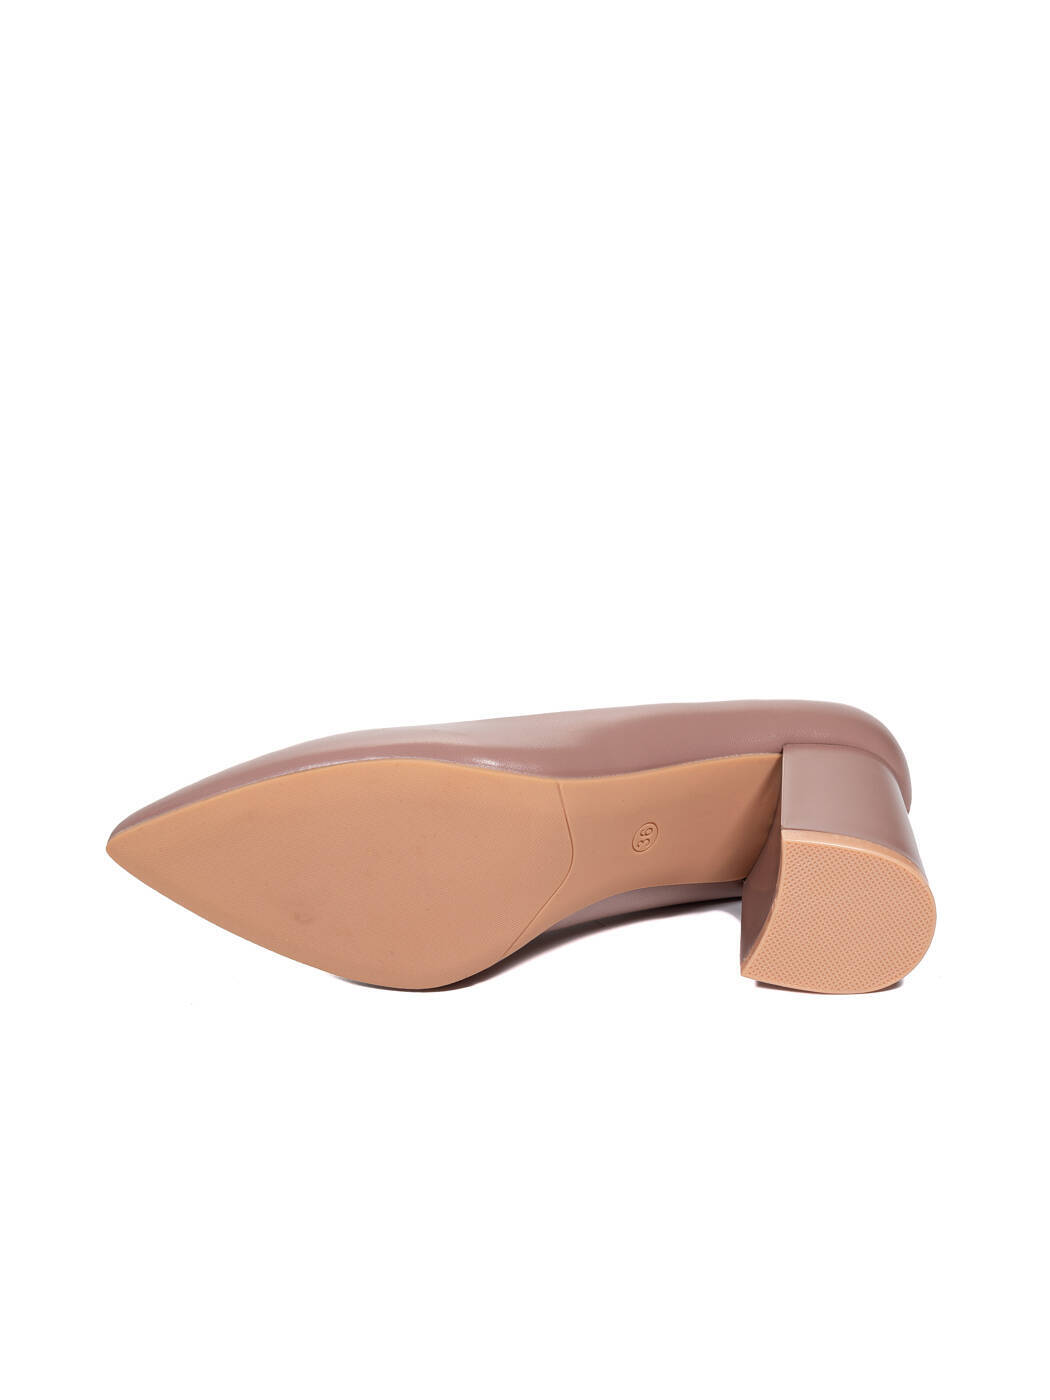 Туфли женские темно-пудровые экокожа каблук устойчивый демисезон от производителя HM вид 2